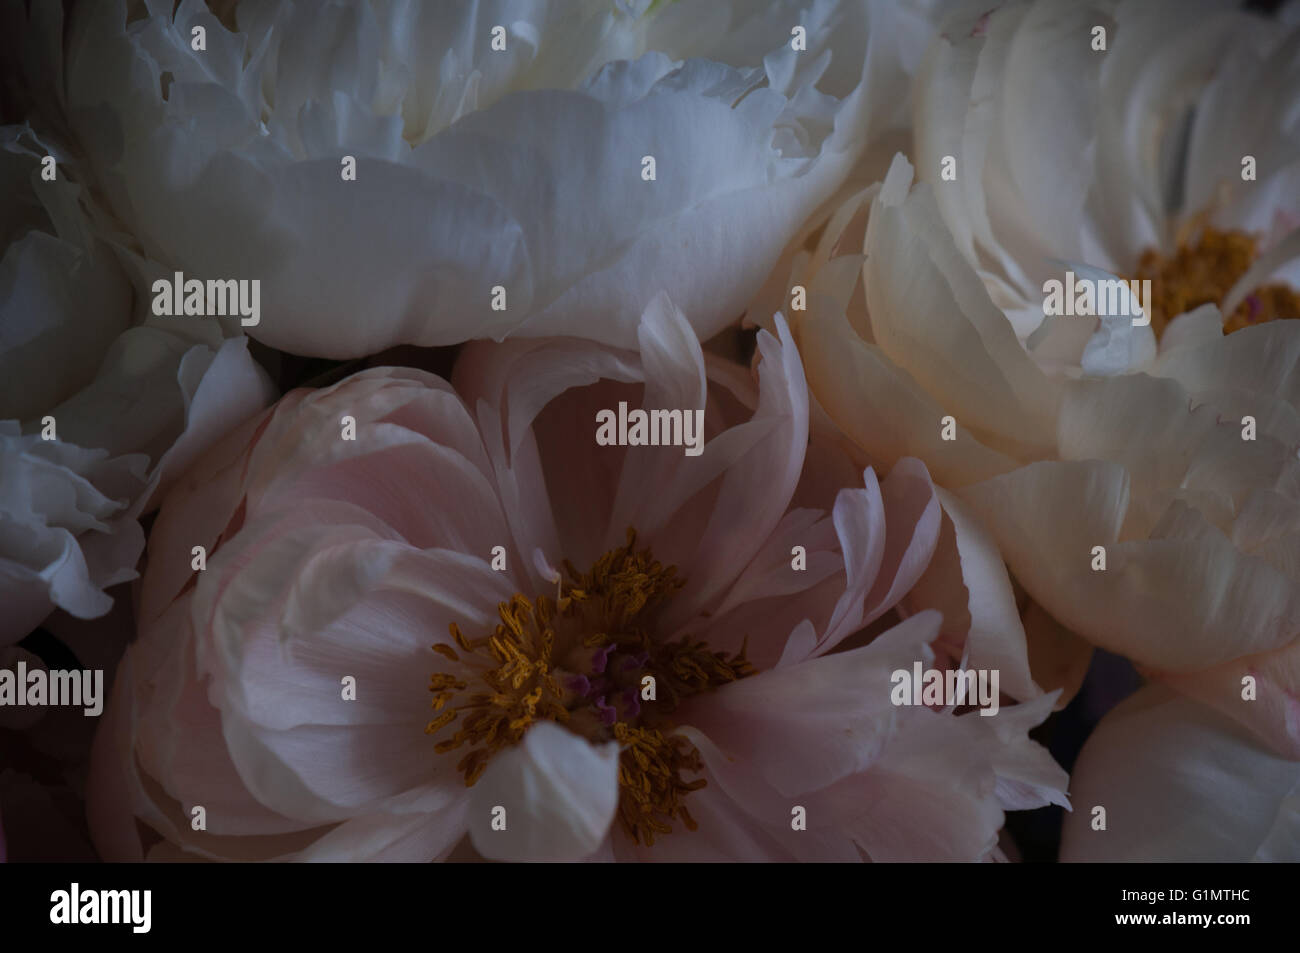 Un close-up de délicates pivoines blanches et roses en lumière sombre Banque D'Images